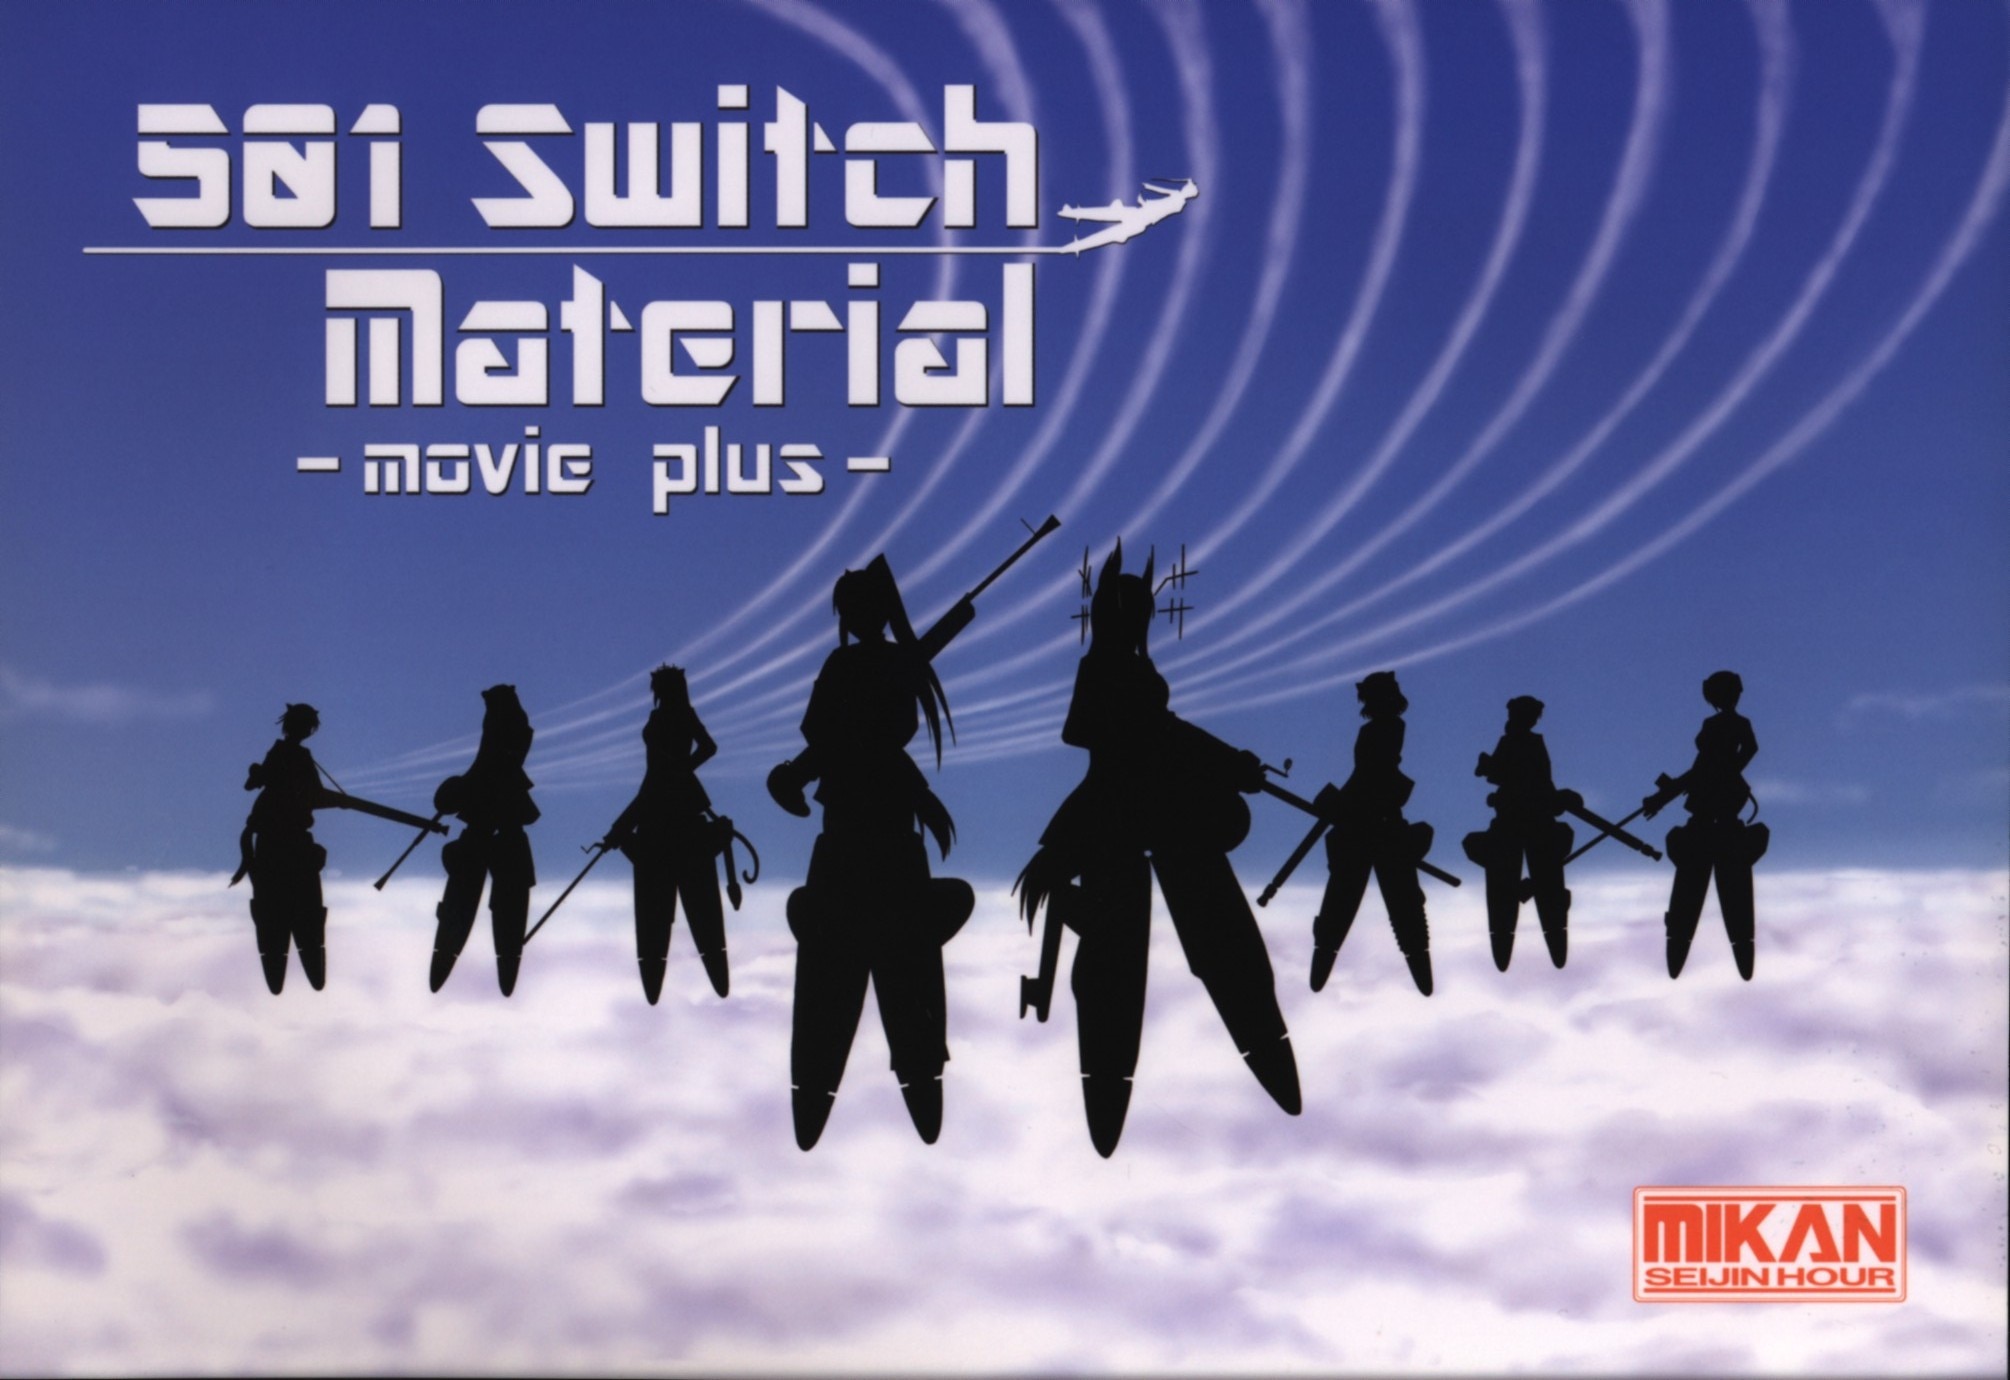 ミカンセイジンアワー (ミカンセイジン) 501 Switch Material movie plus | まんだらけ Mandarake